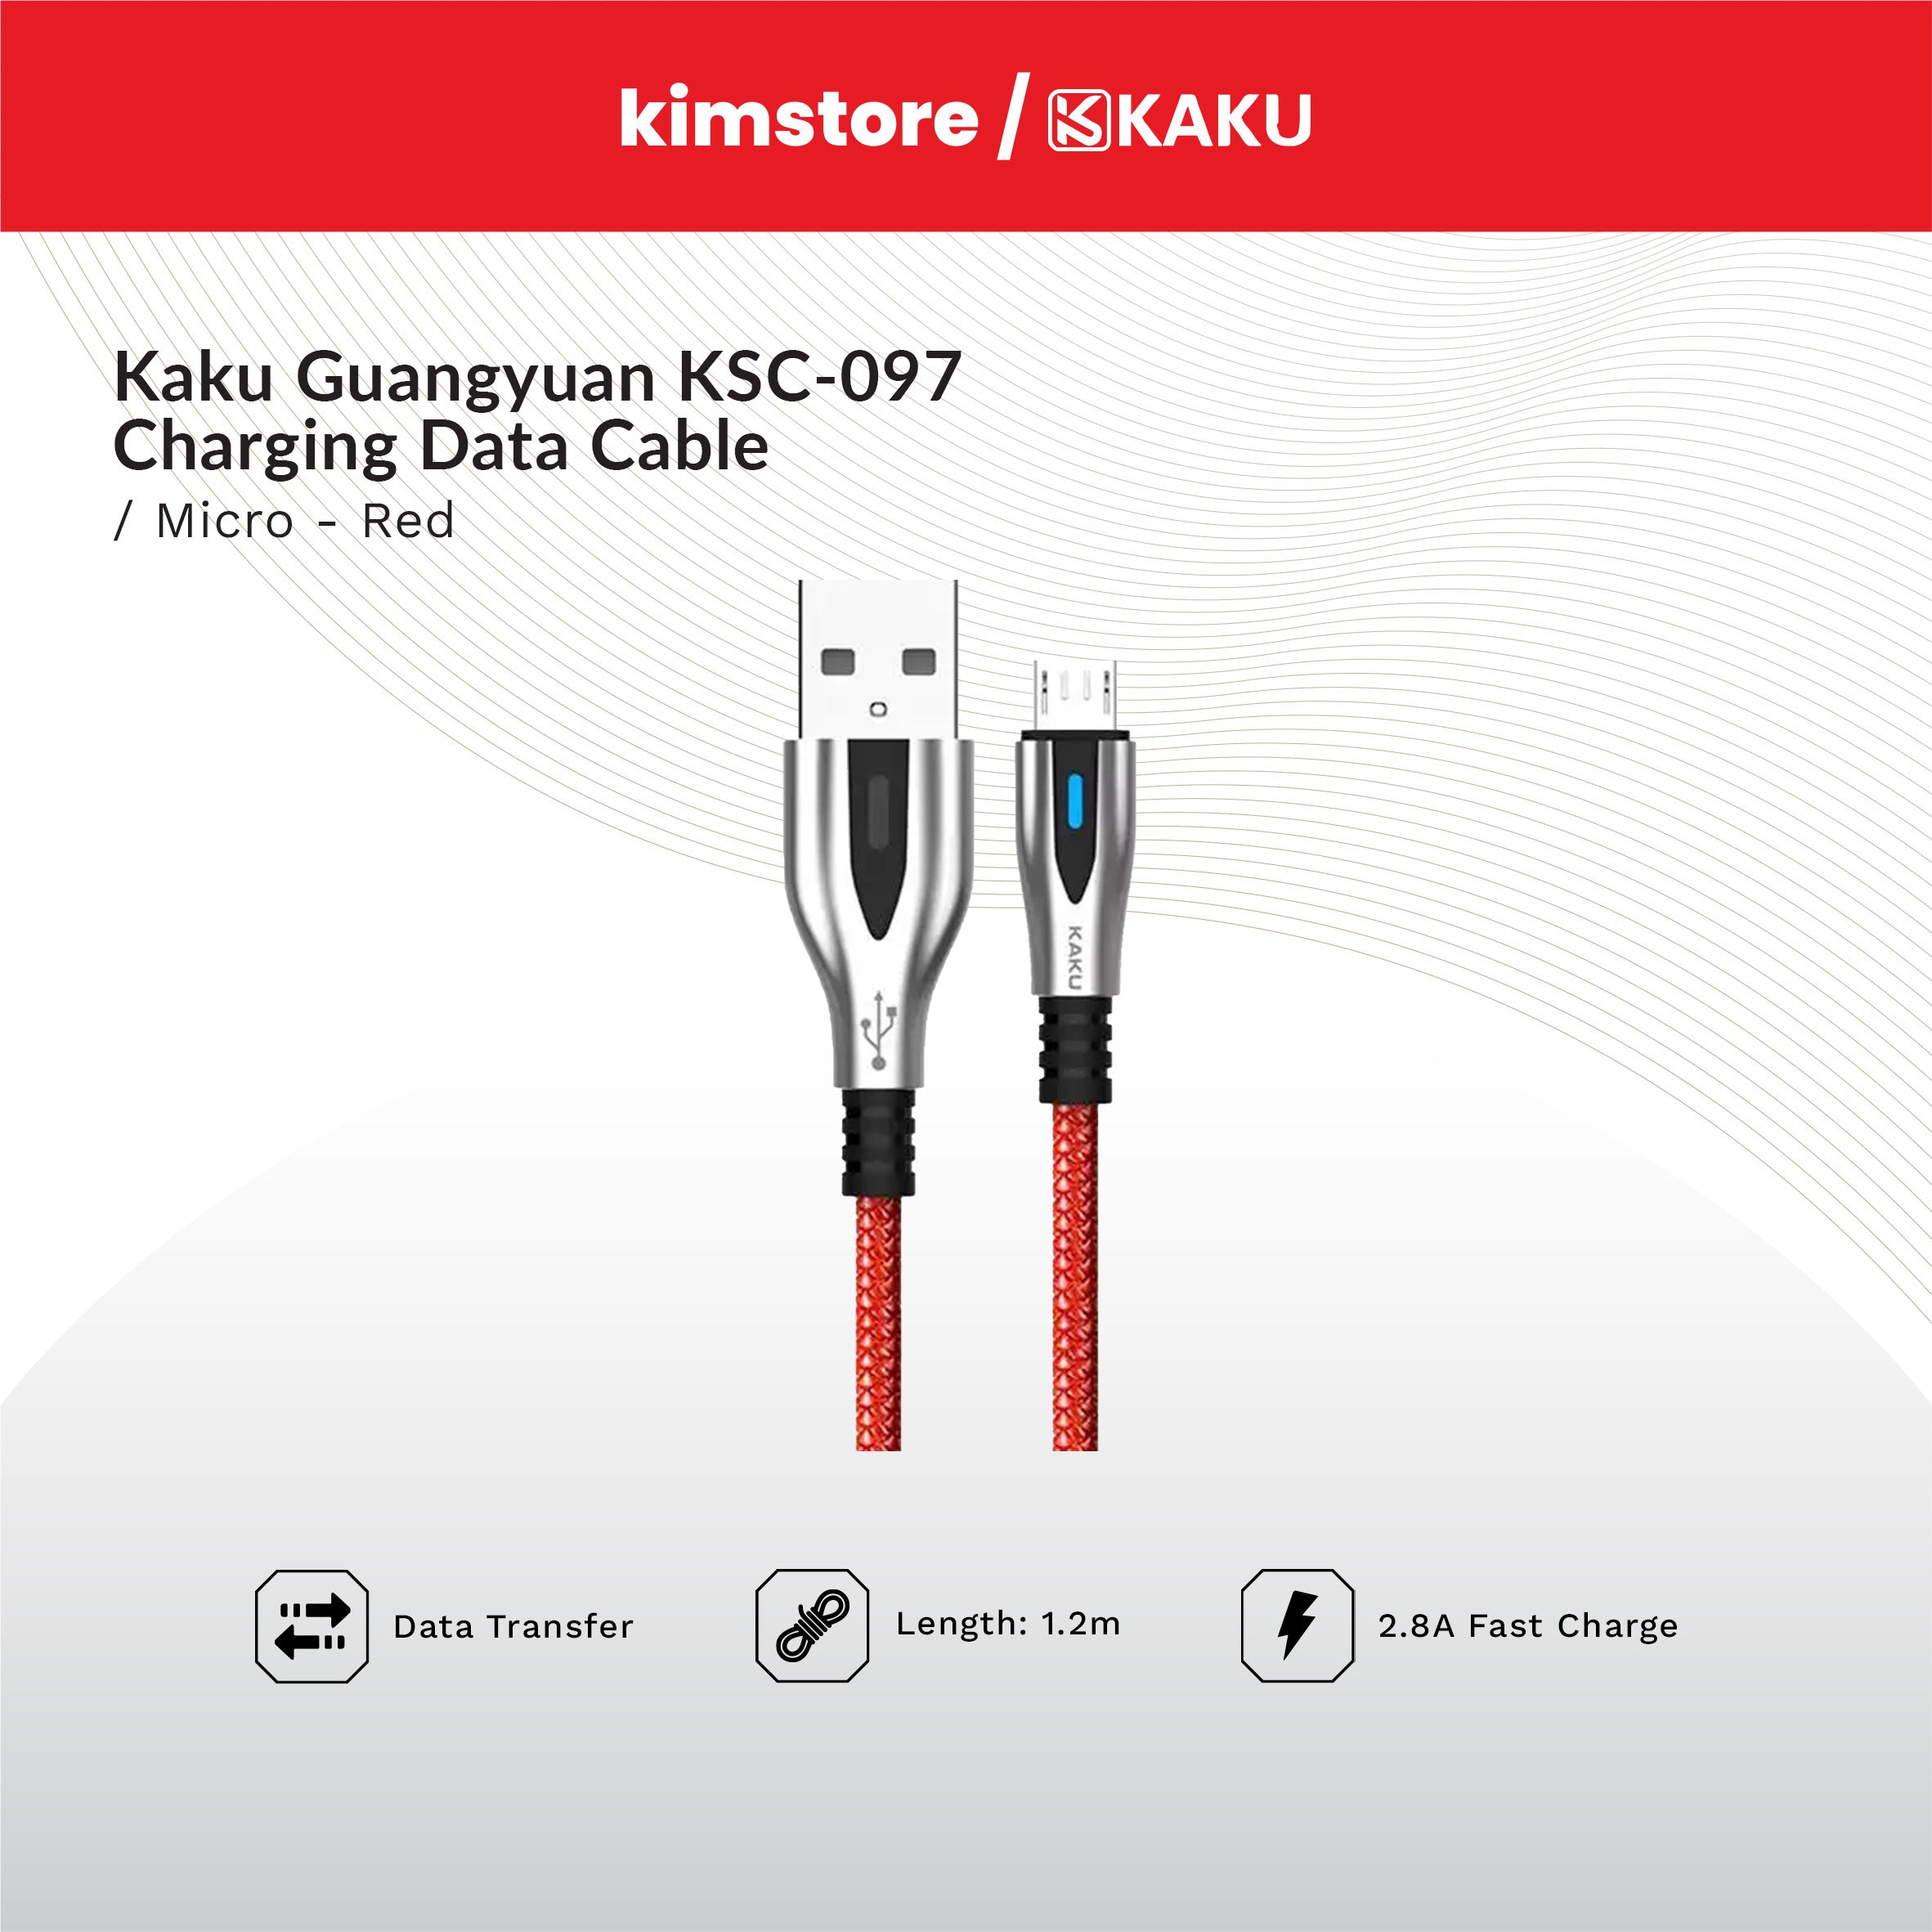 KAKU GUANGYUAN KSC-097 Micro Charging Data Cable